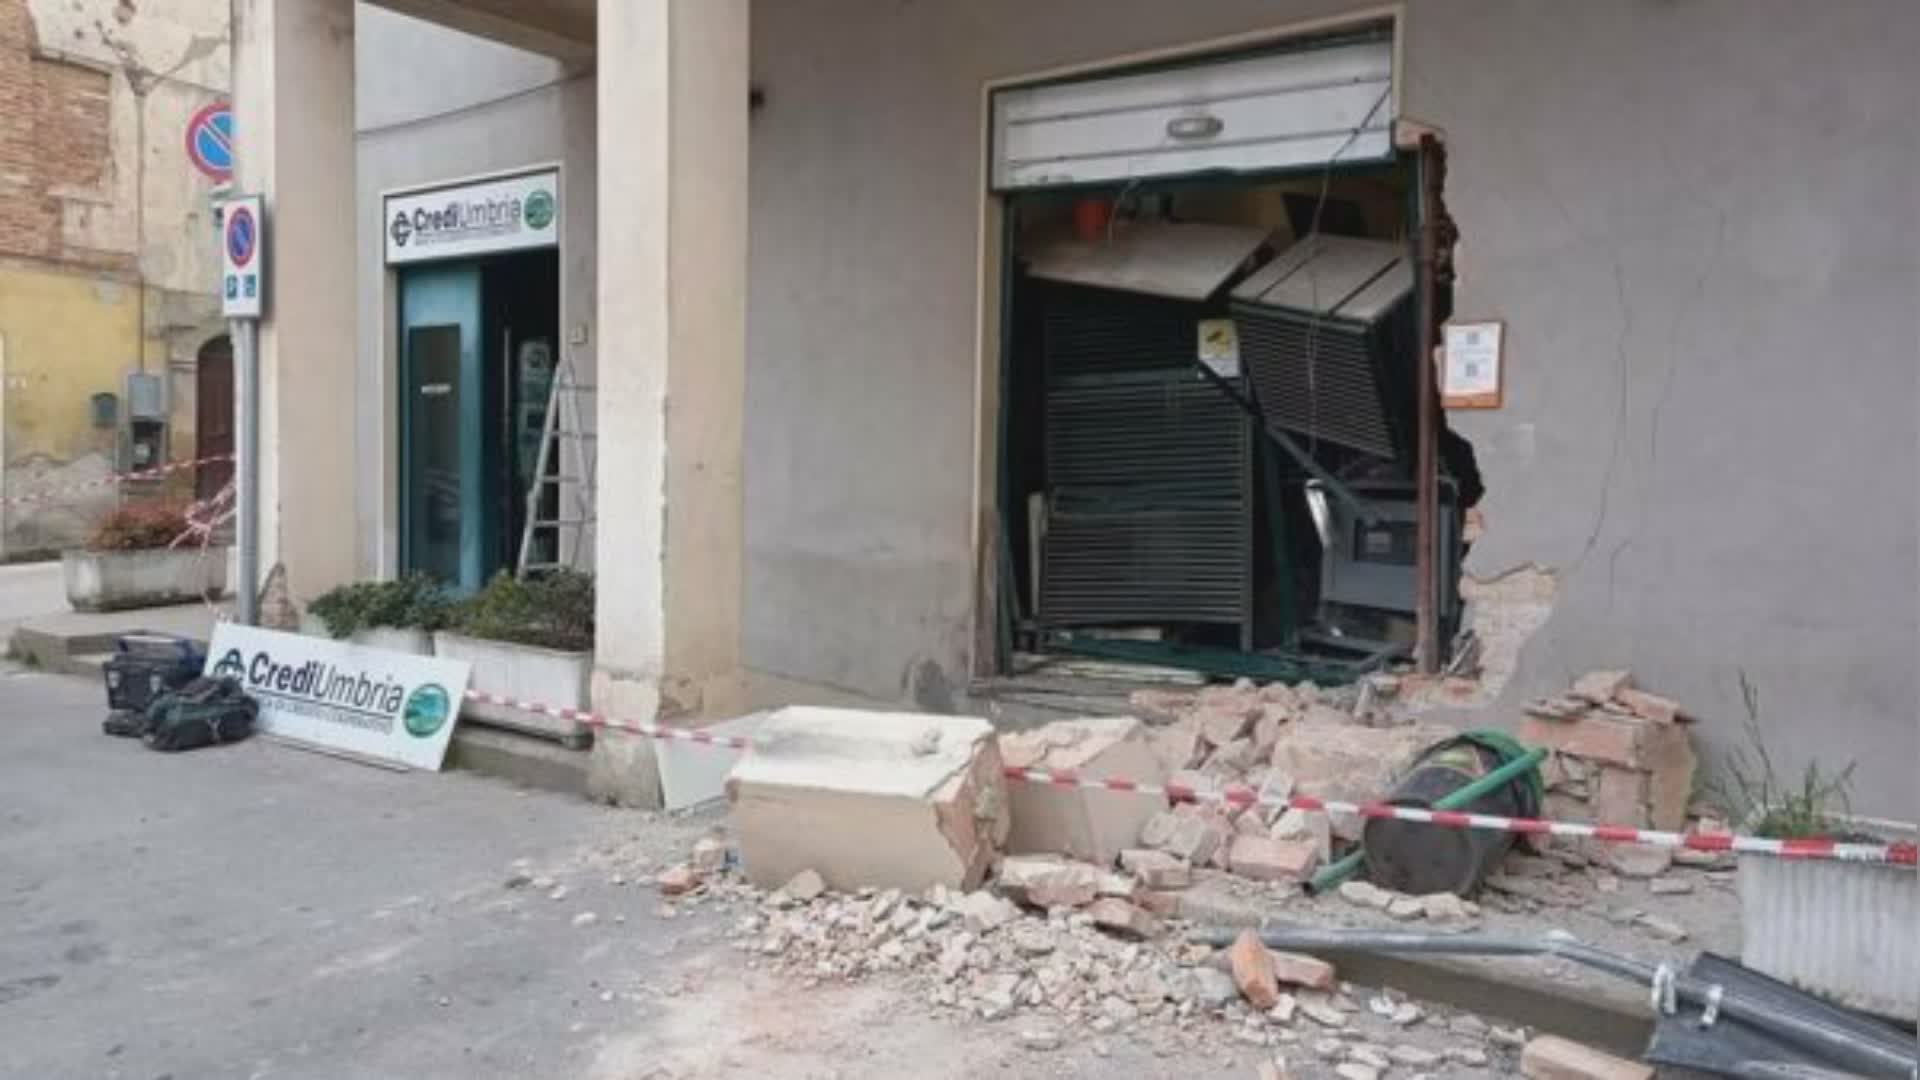 Altro assalto al bancomat, sfondato muro della Bcc